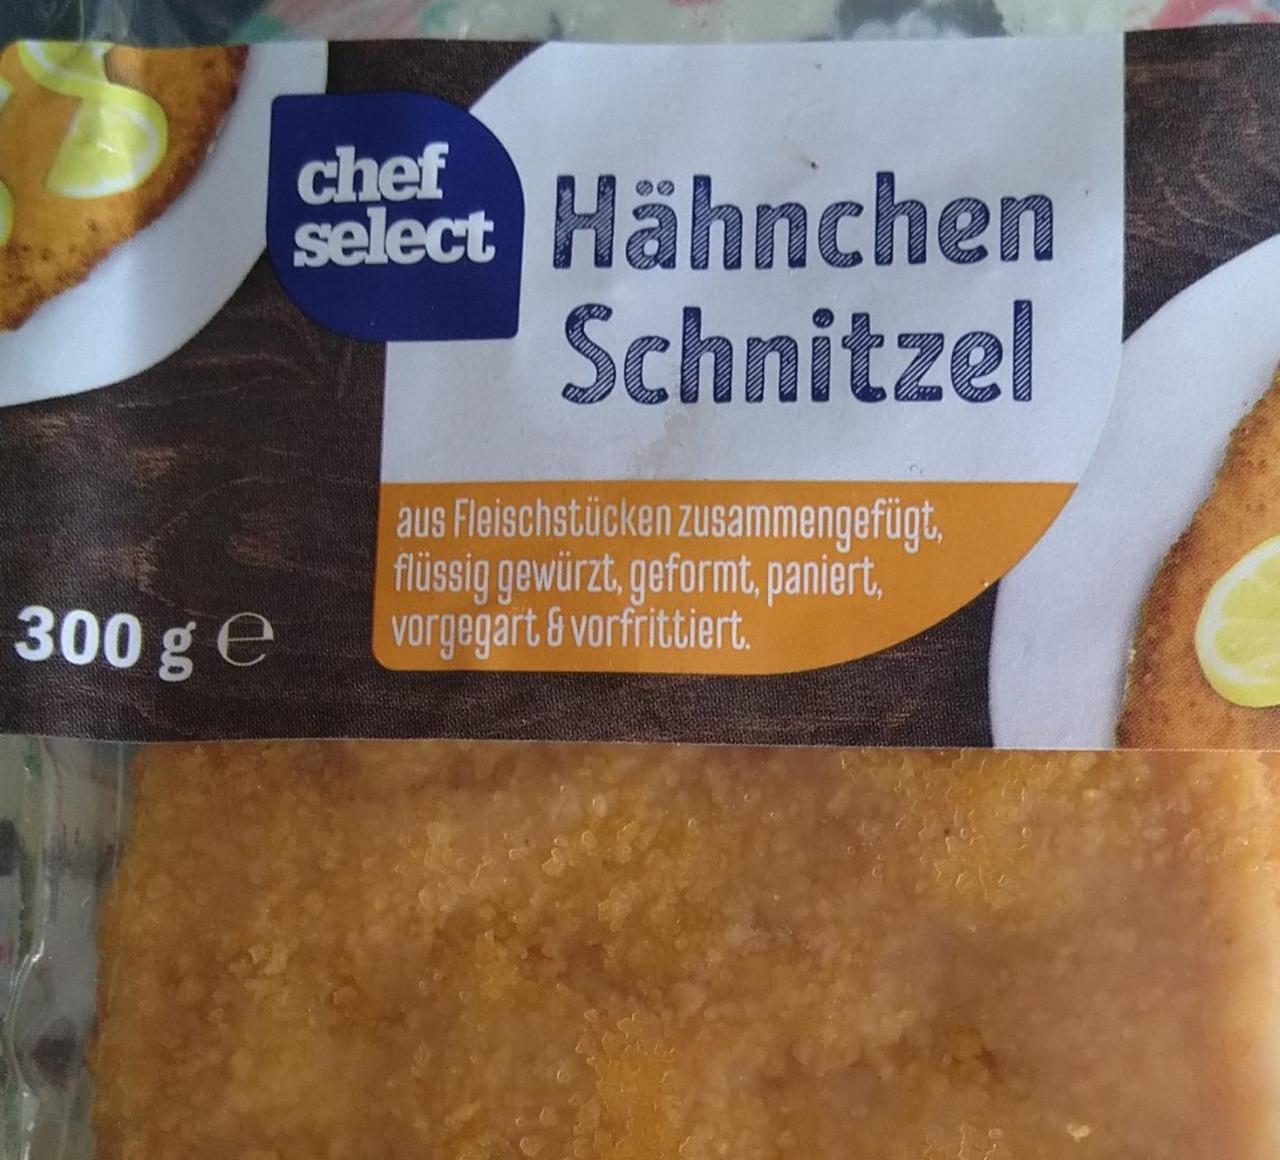 Chef nutriční kJ Select Hähnchen kalorie, Schnitzel hodnoty a -